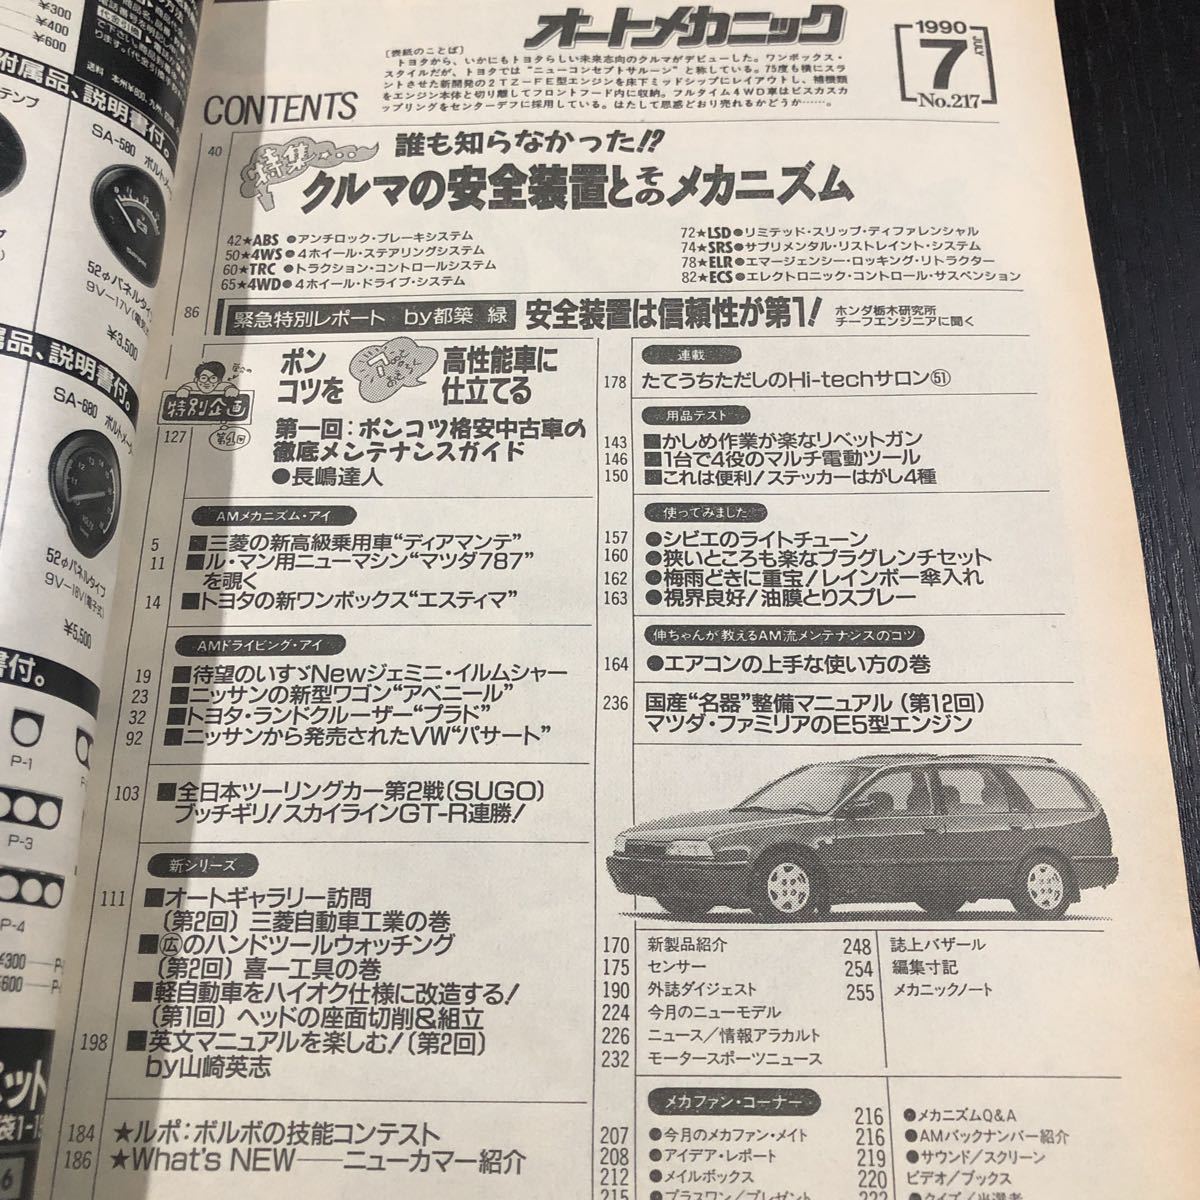 ka24 авто механизм nik1990 год 7 месяц номер автомобиль машина обслуживание техническое обслуживание двигатель местного производства машина иностранный автомобиль машина Mazda машина сопутствующие товары модель год инструкция старый машина 